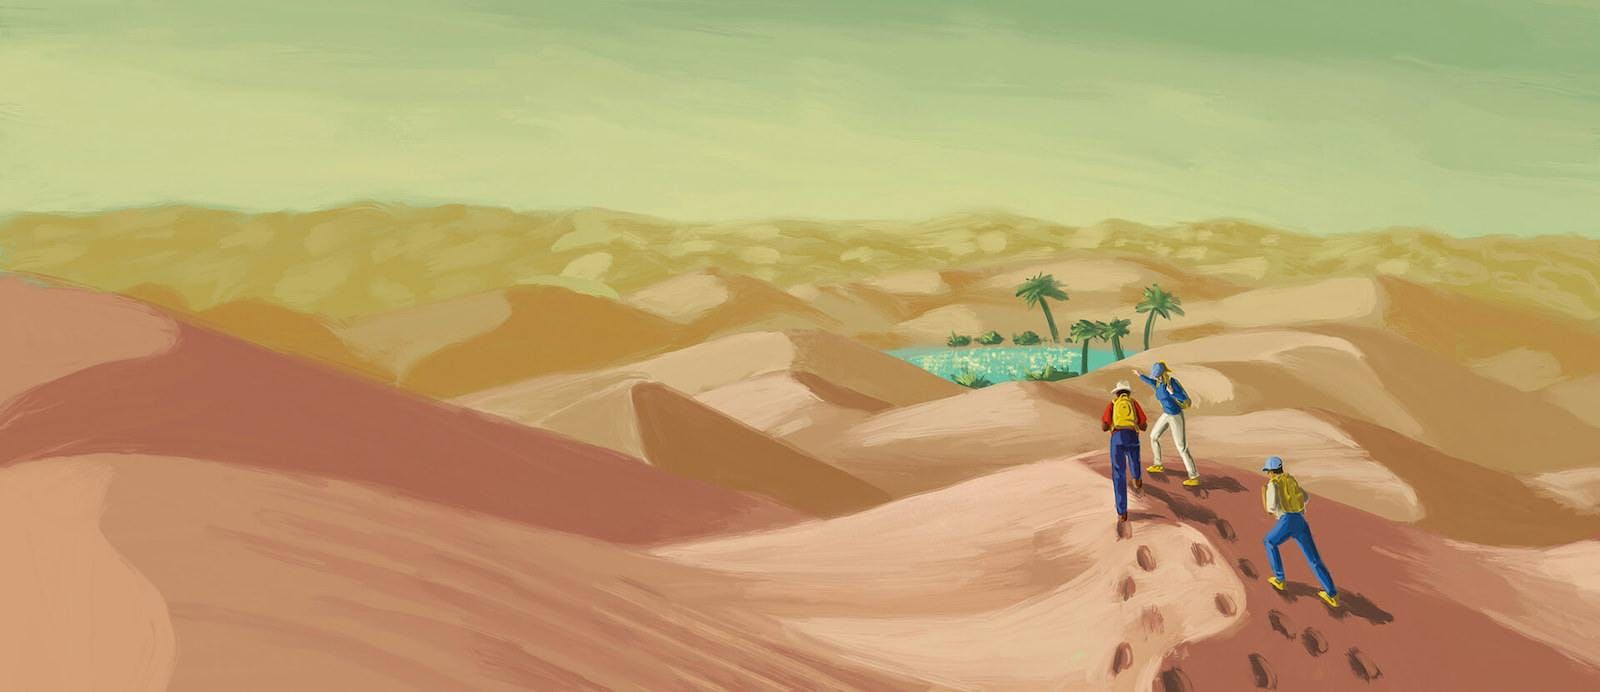 Hiking in the desert